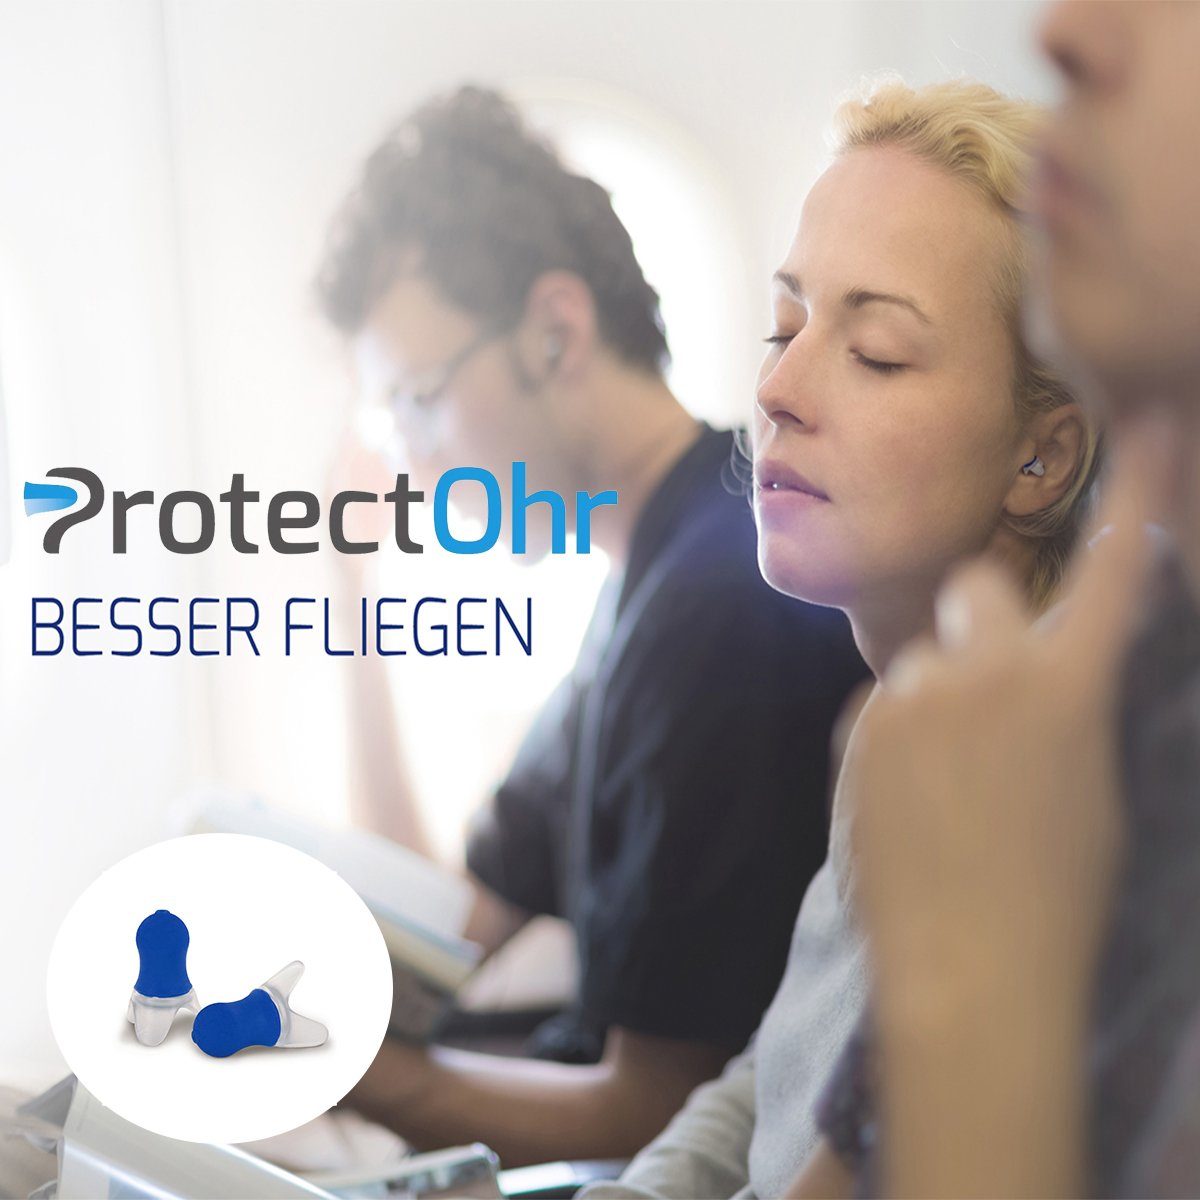 zum Travel, im für Ohrstöpsel Reisen Flugzeug, Druckausgleich Gehörschutzstöpsel ProtectOhr ideal